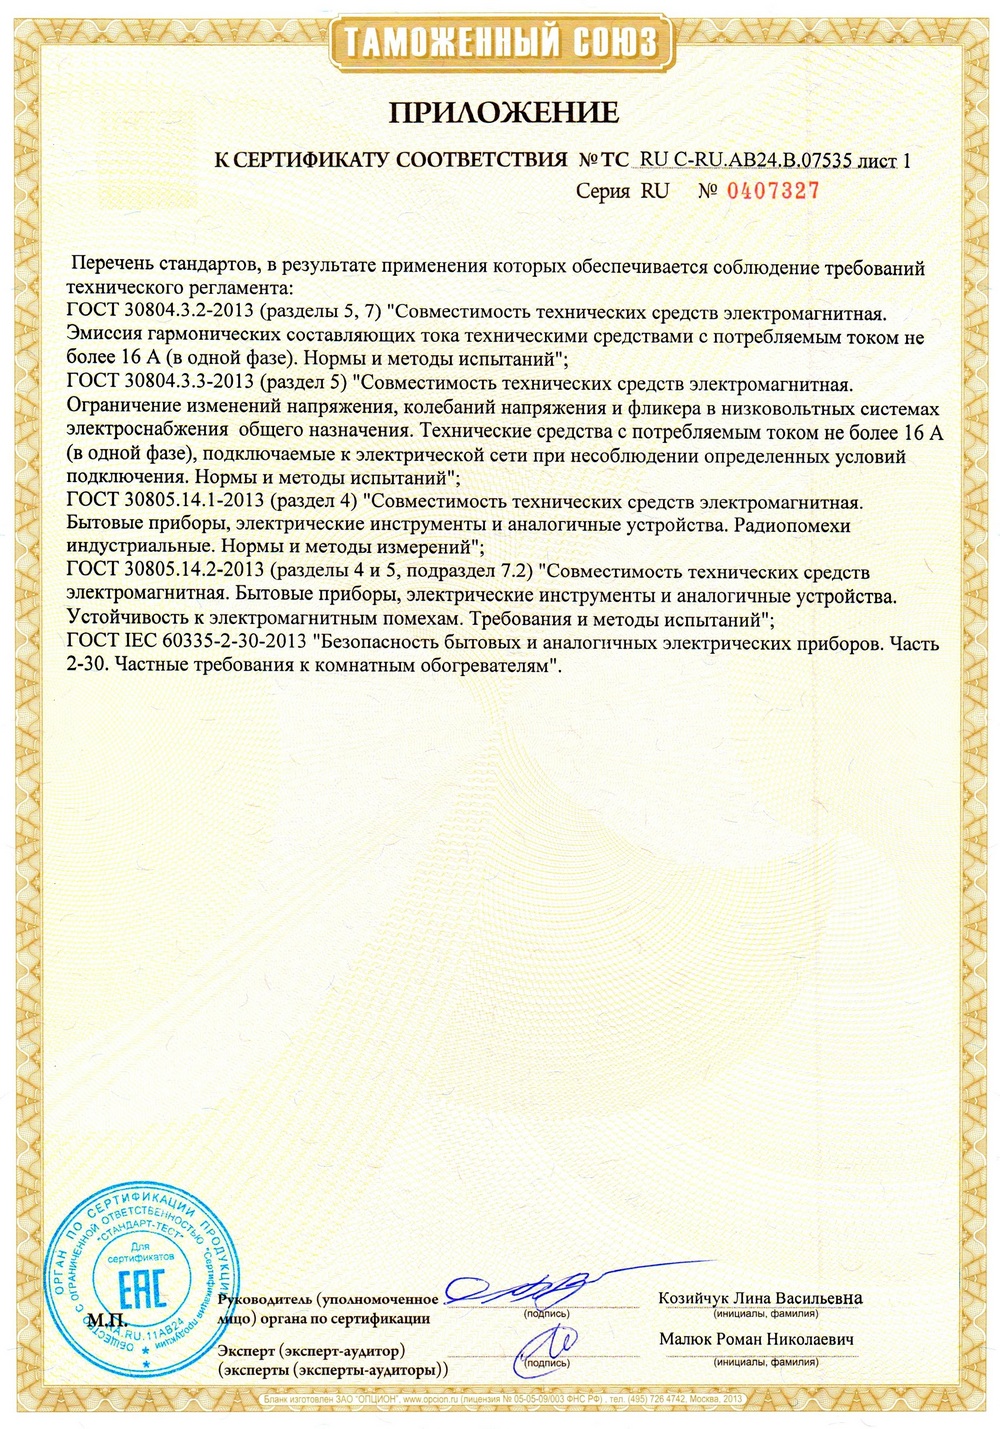 Таможенная декларация на обогреватели Алмак